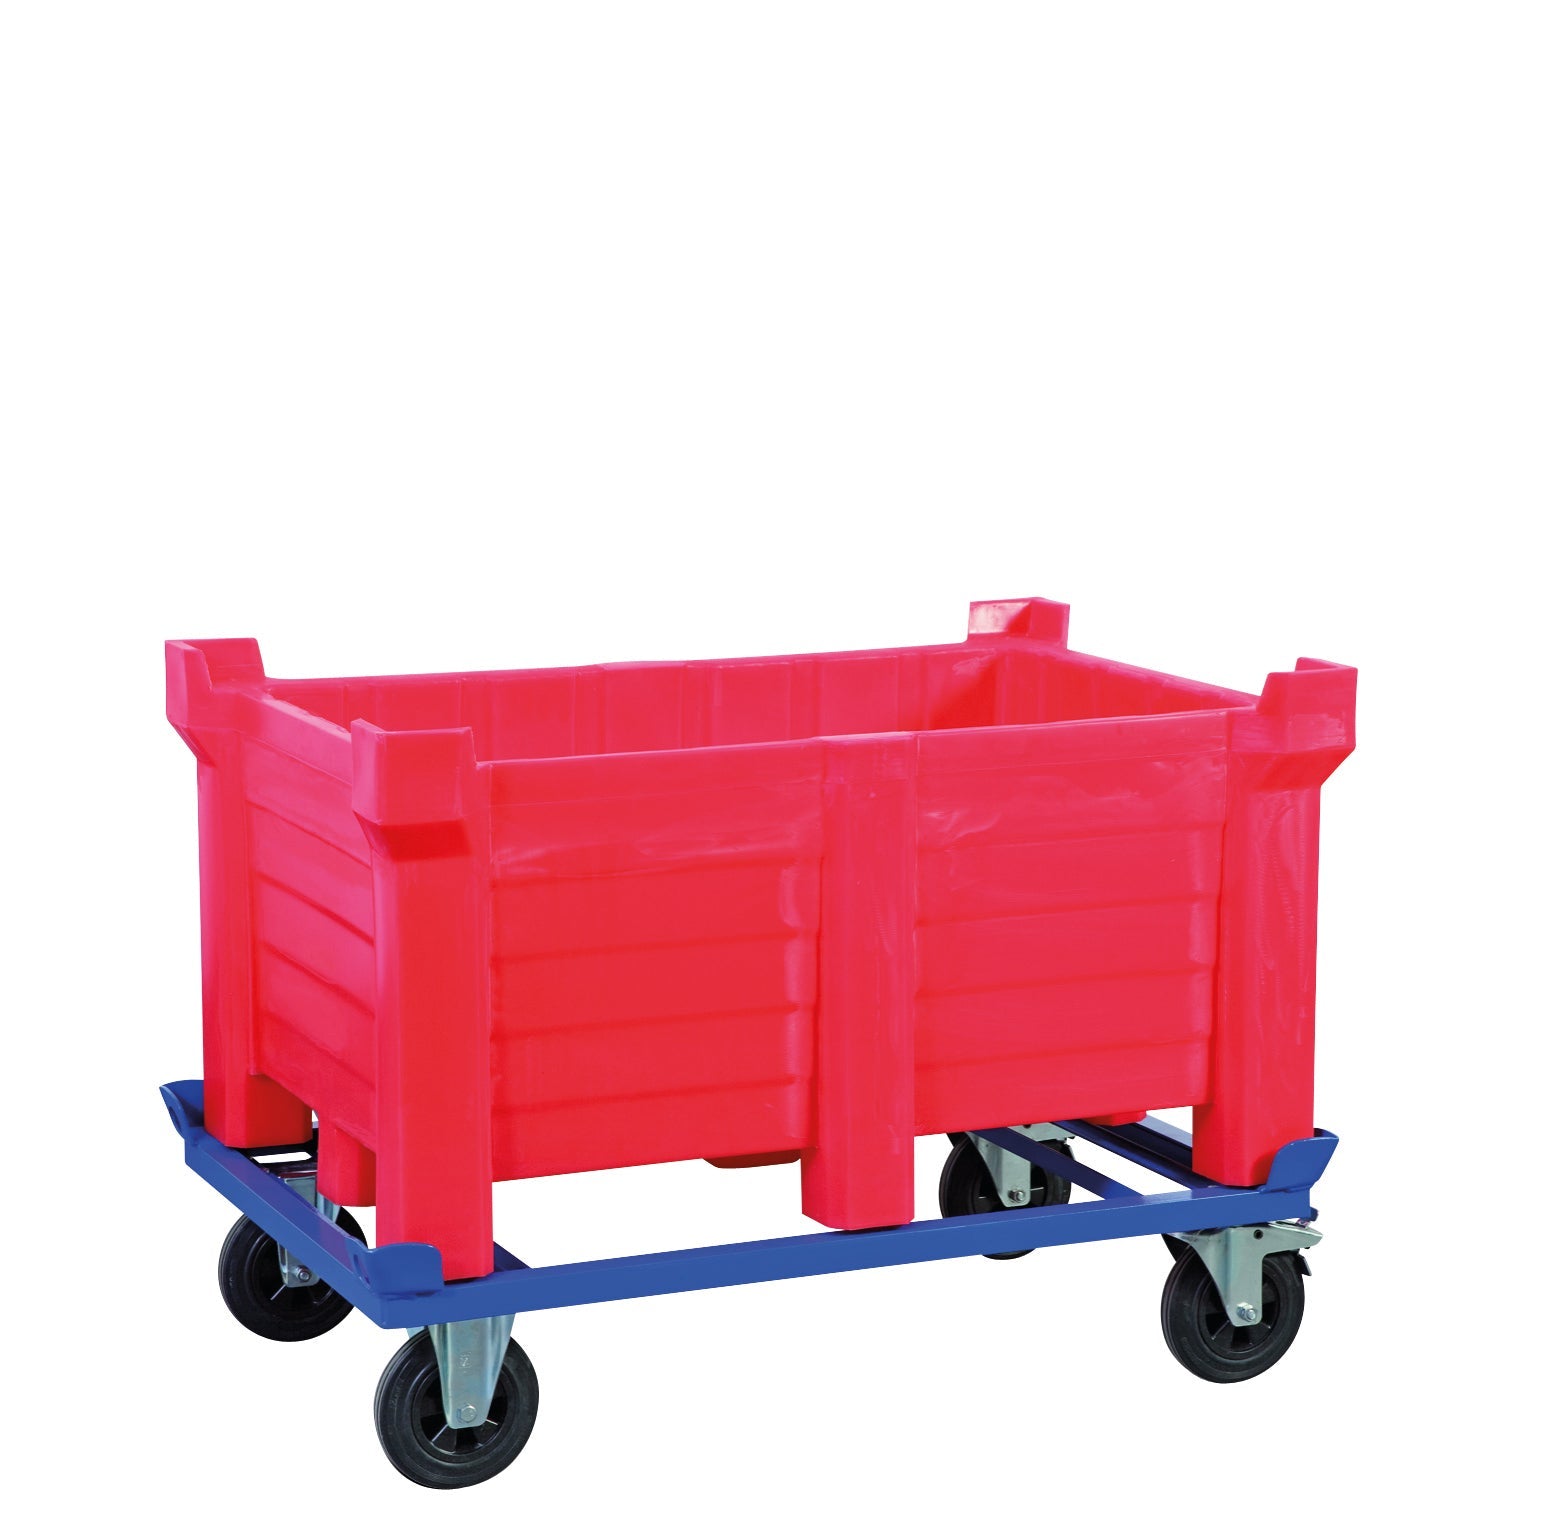 Récipients à empilement en polyéthylène rouge fermés, 90 litres, 500x500x800, polyéthylène